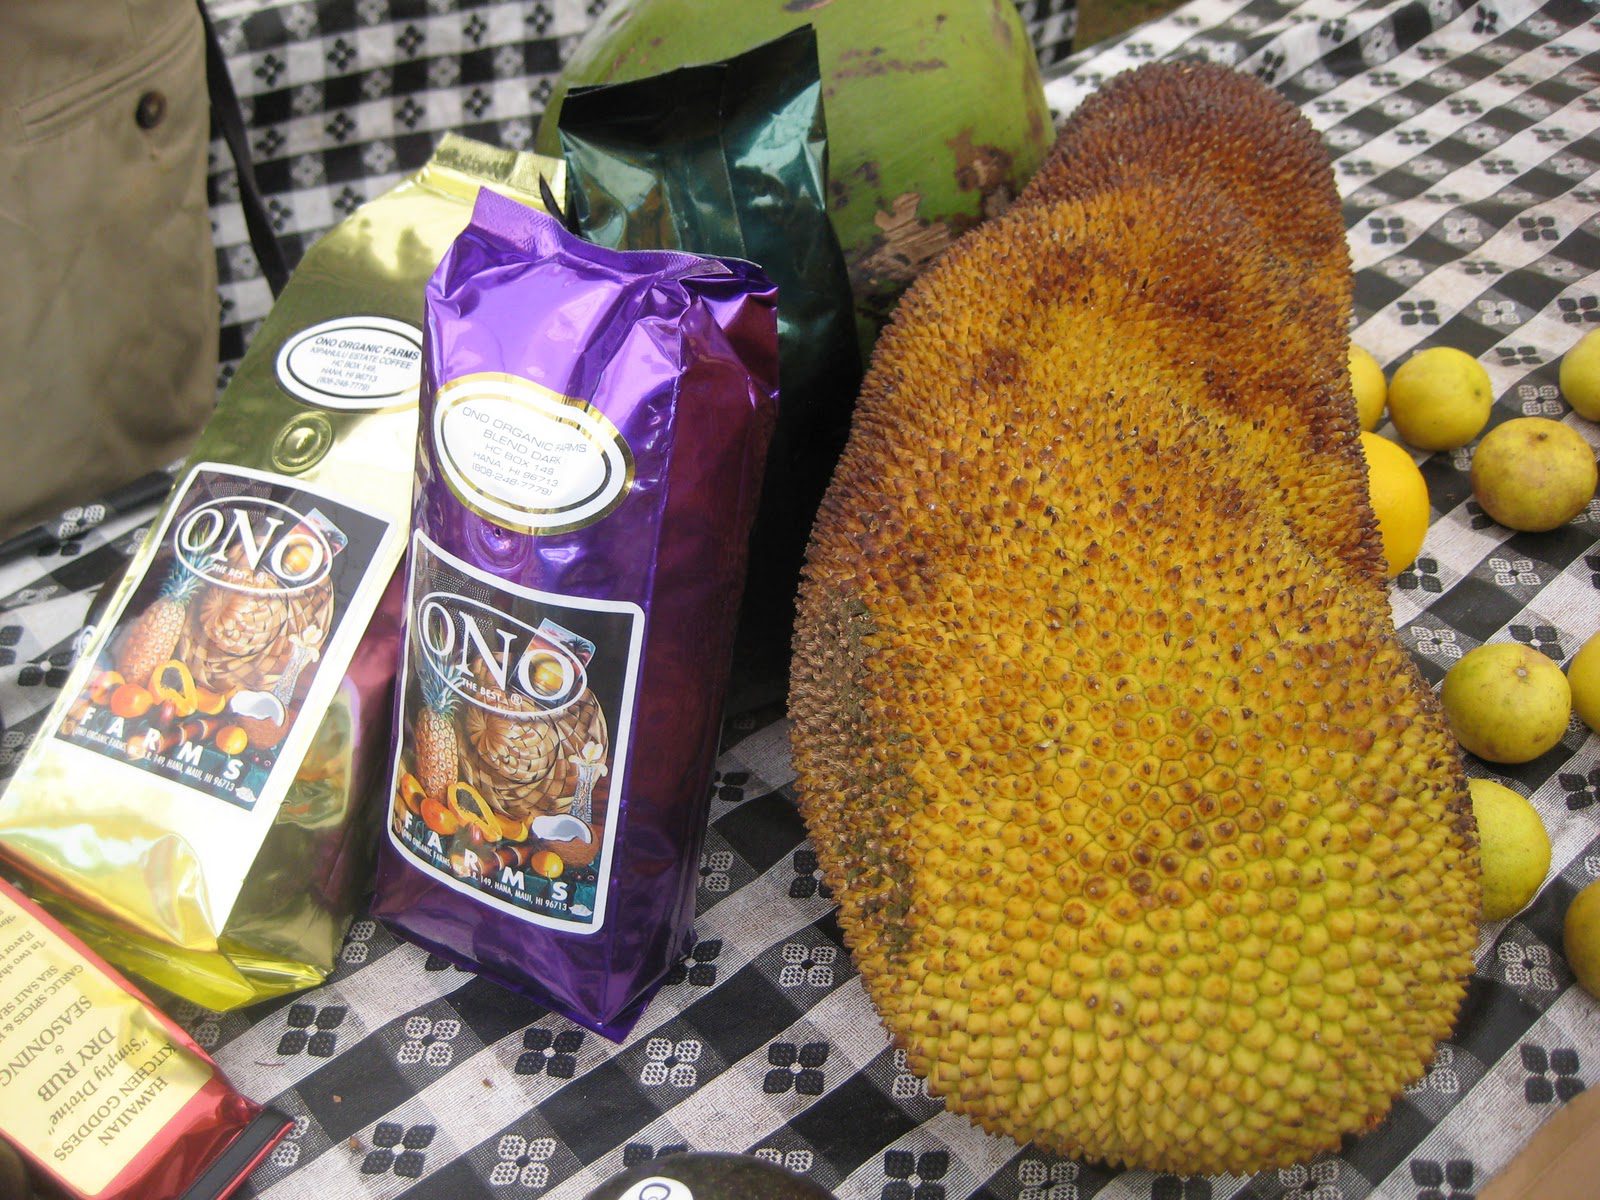 Maui Organic Farms - Jackfrugt og kaffe på et bord til salg